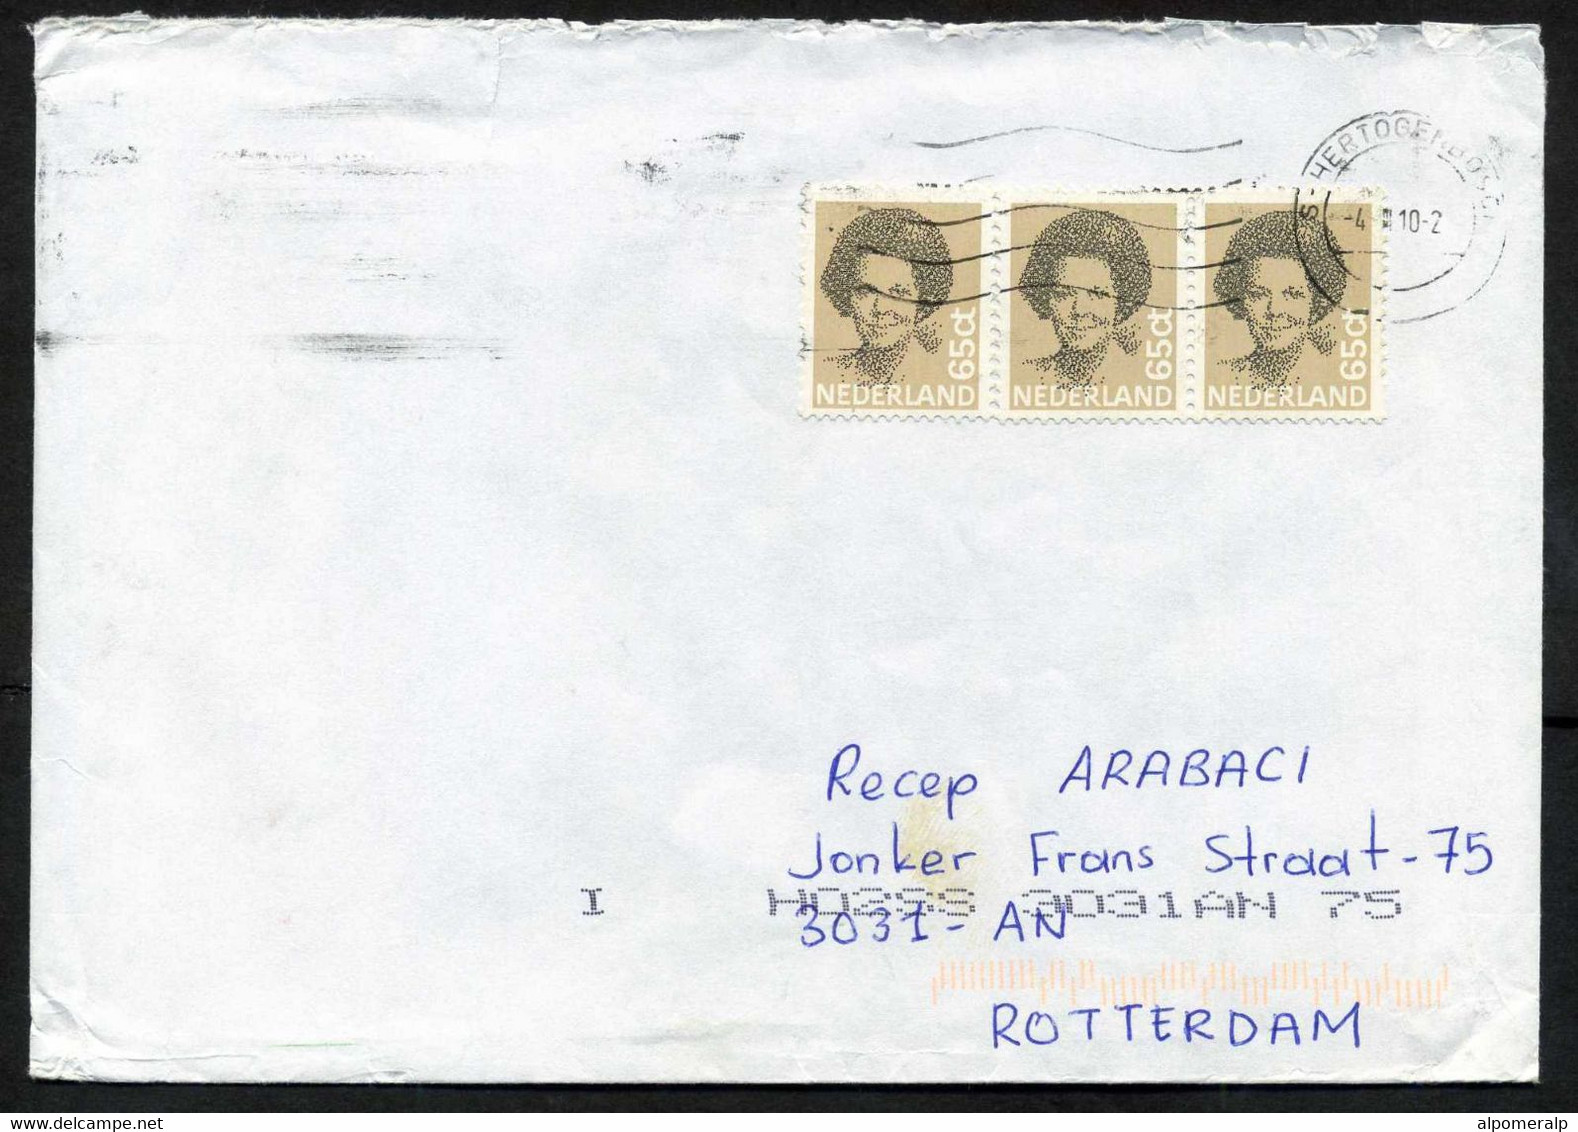 Netherlands 's-Hertogenbosch 2010 Mail Cover Used To Turkey | Mi 1197 Queen Beatrix, Type 'Struyken' - Brieven En Documenten